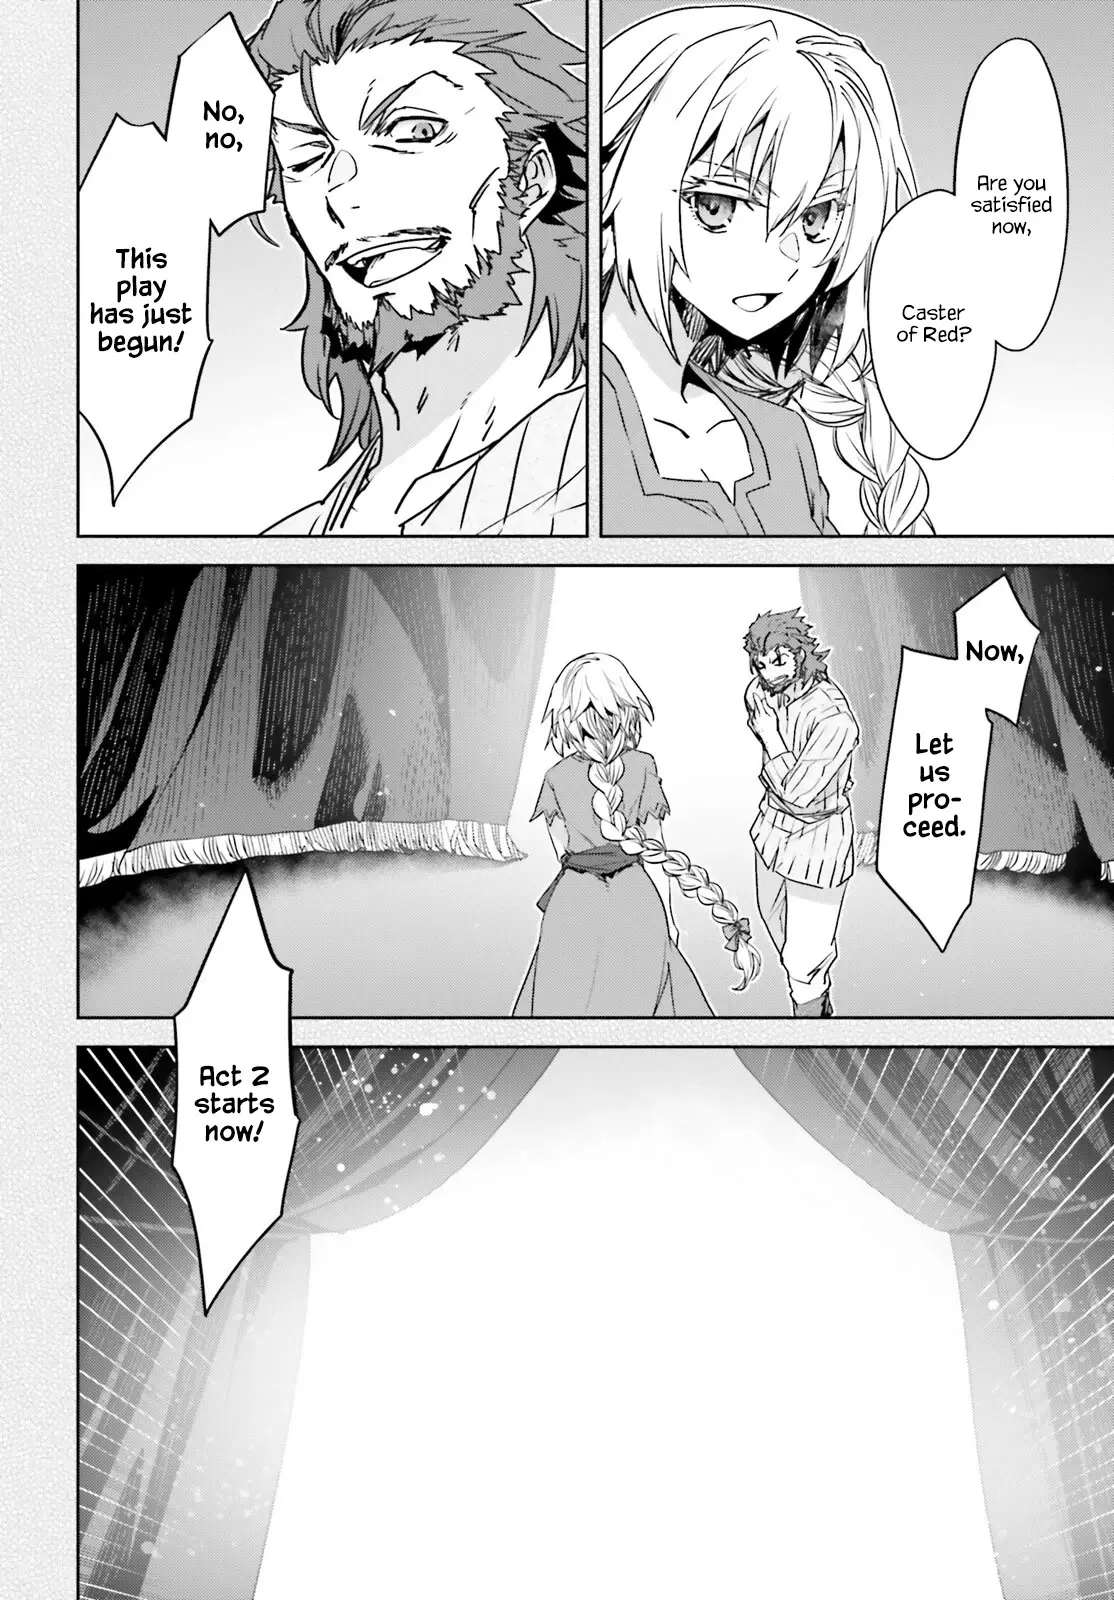 Fate/apocrypha - 64 page 16-9c3a1a9e